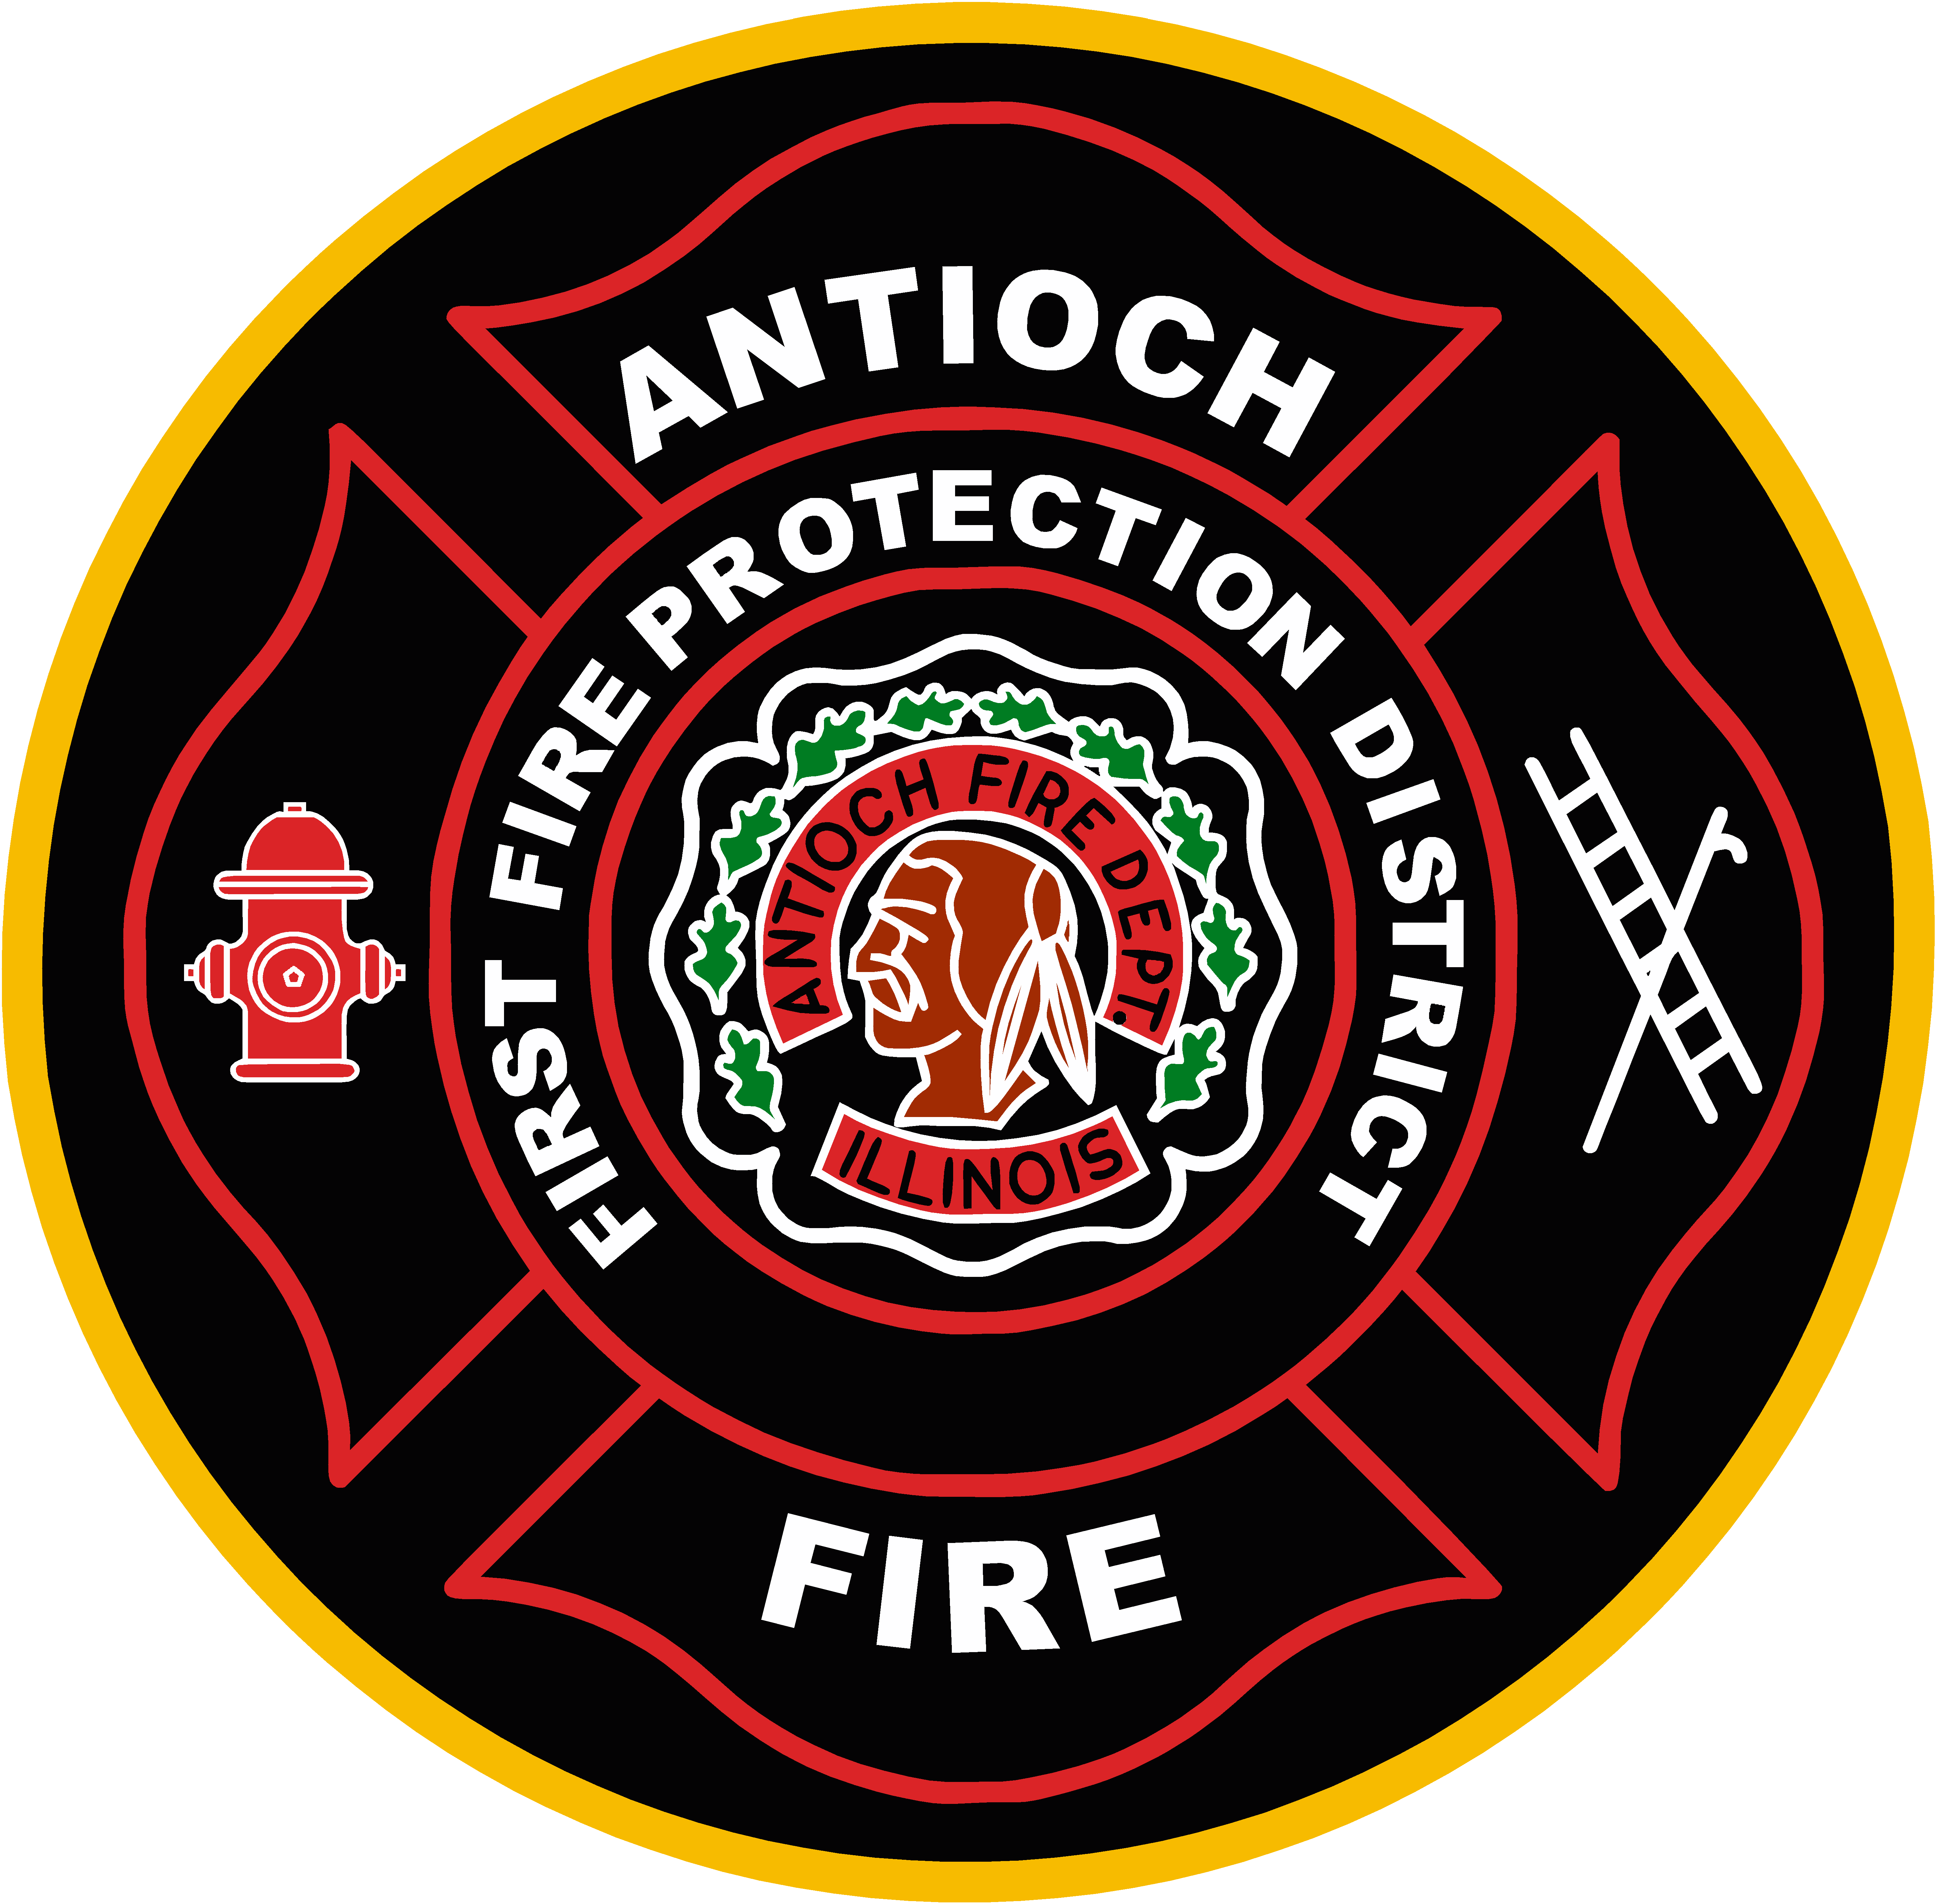 Antioch Fire Department logo patch